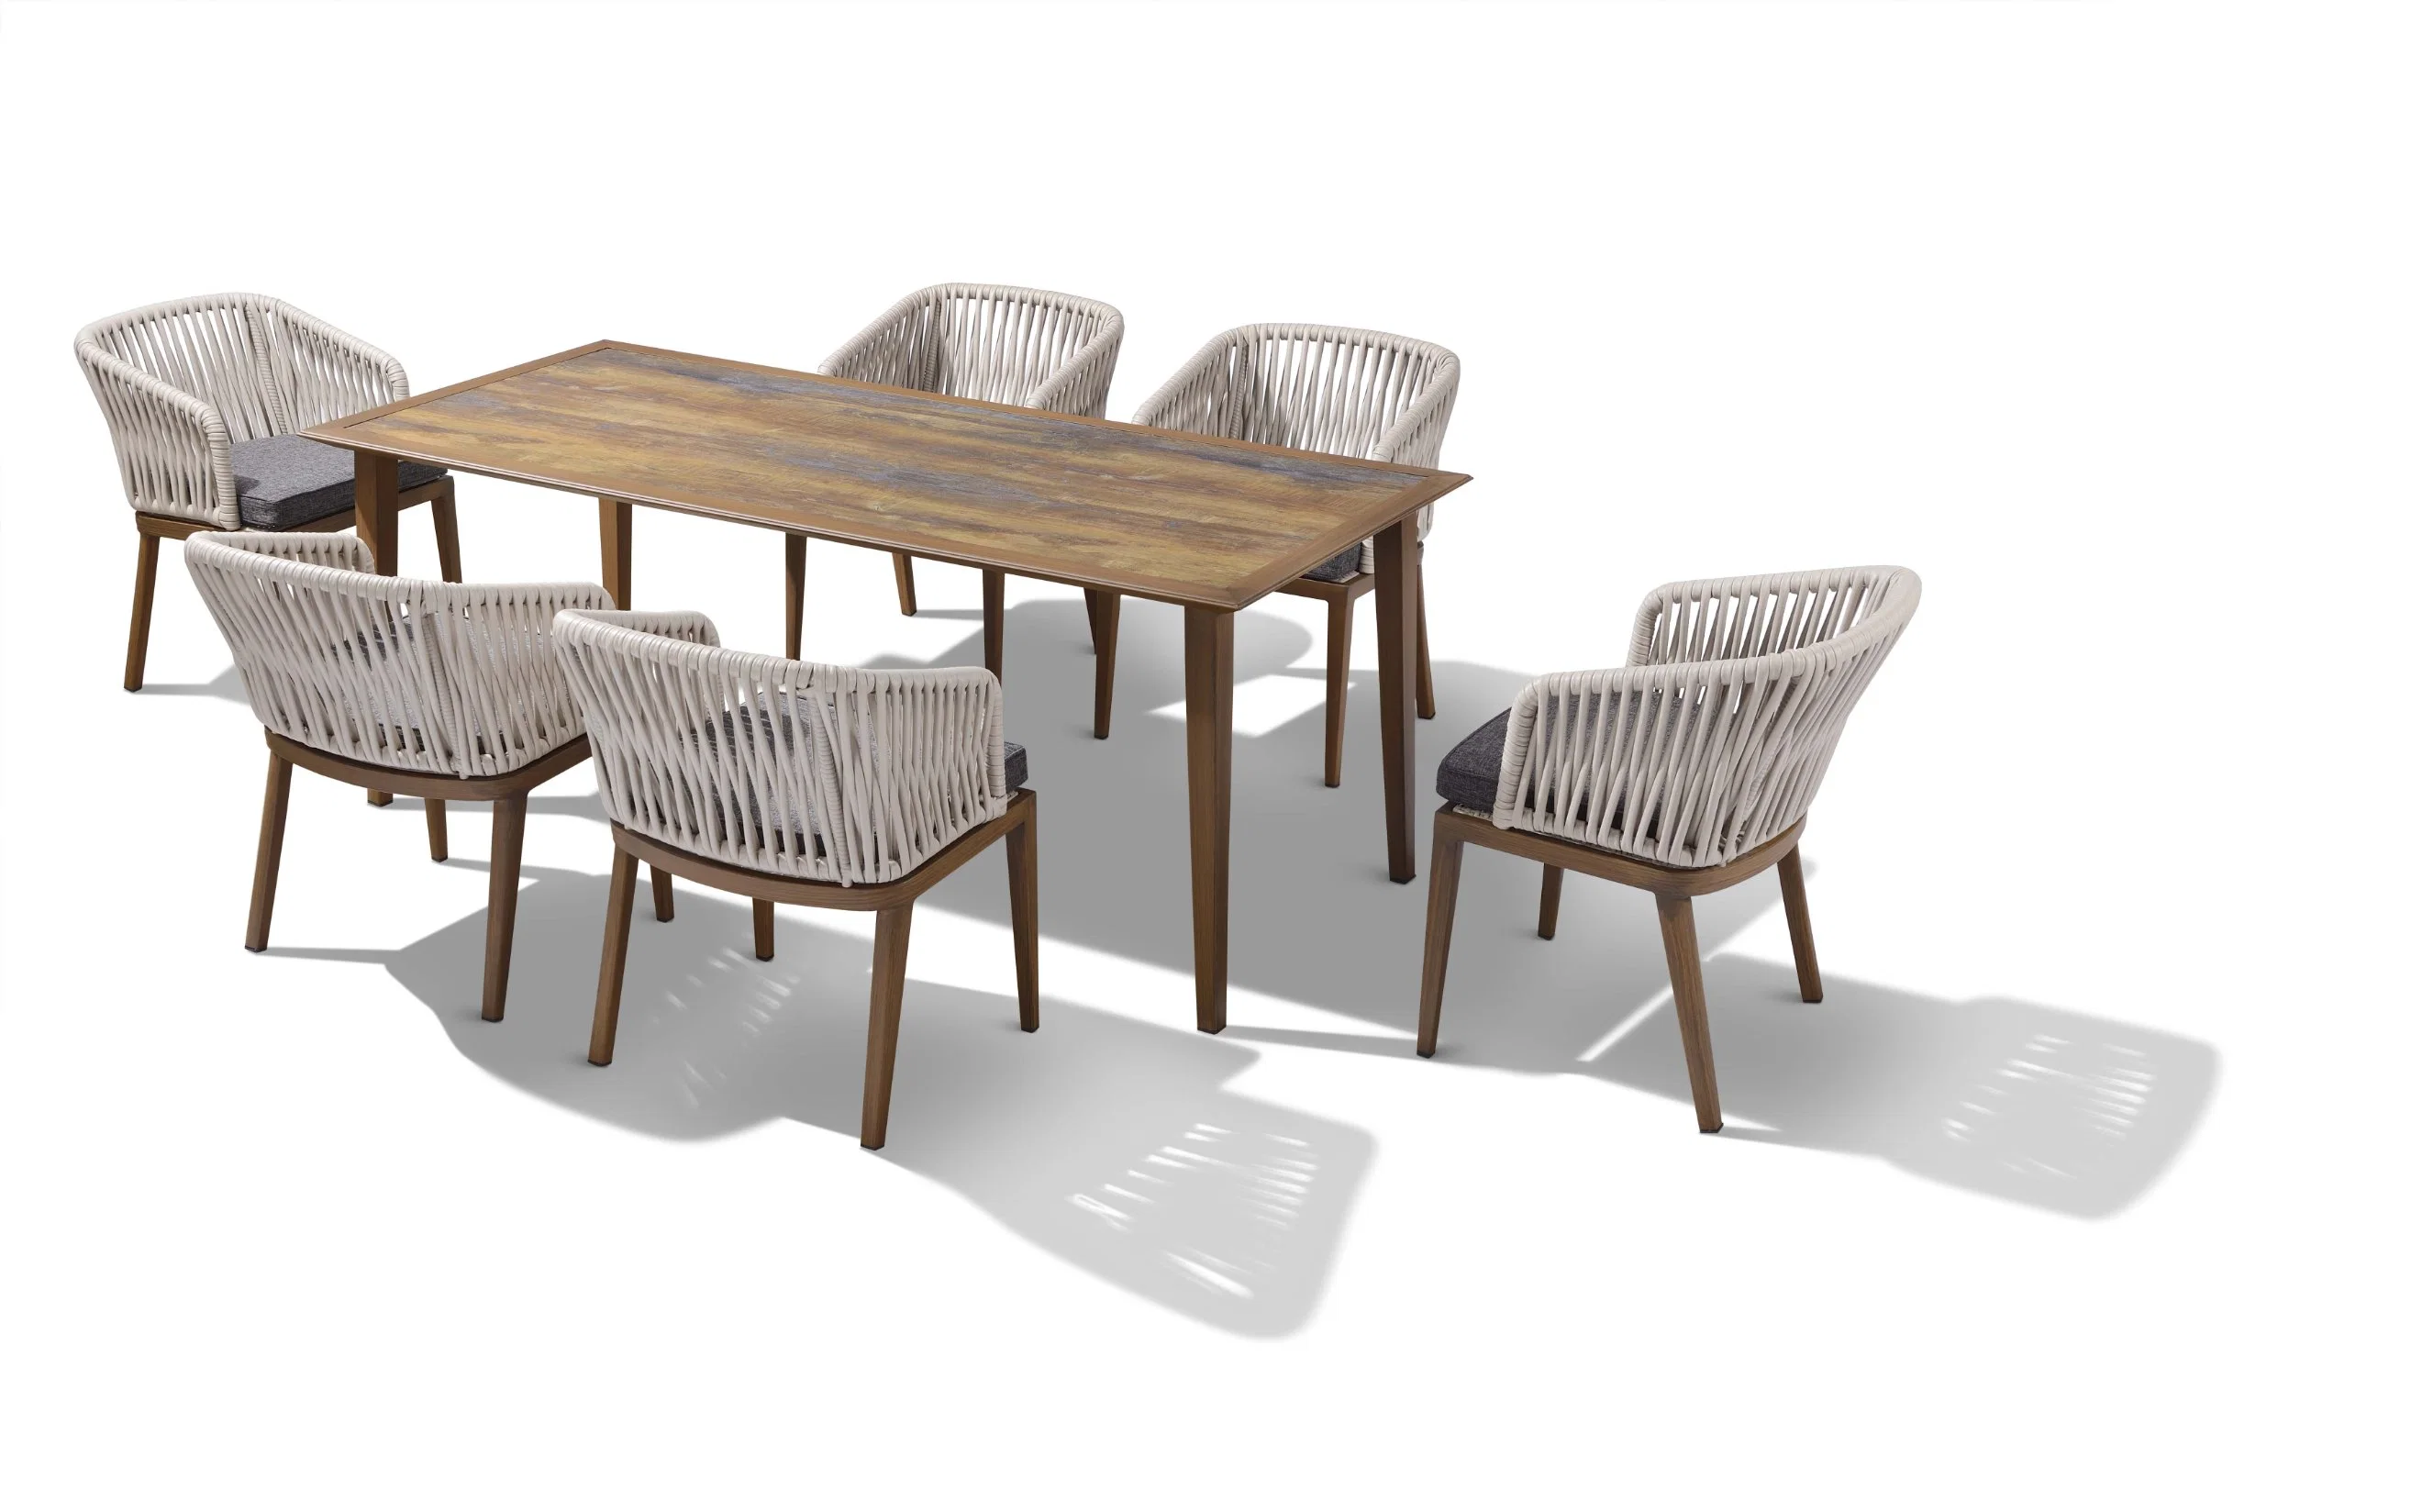 Banheira de vender uma cadeira e mesa de jantar definir conjuntos de mobiliário de jardim do pátio